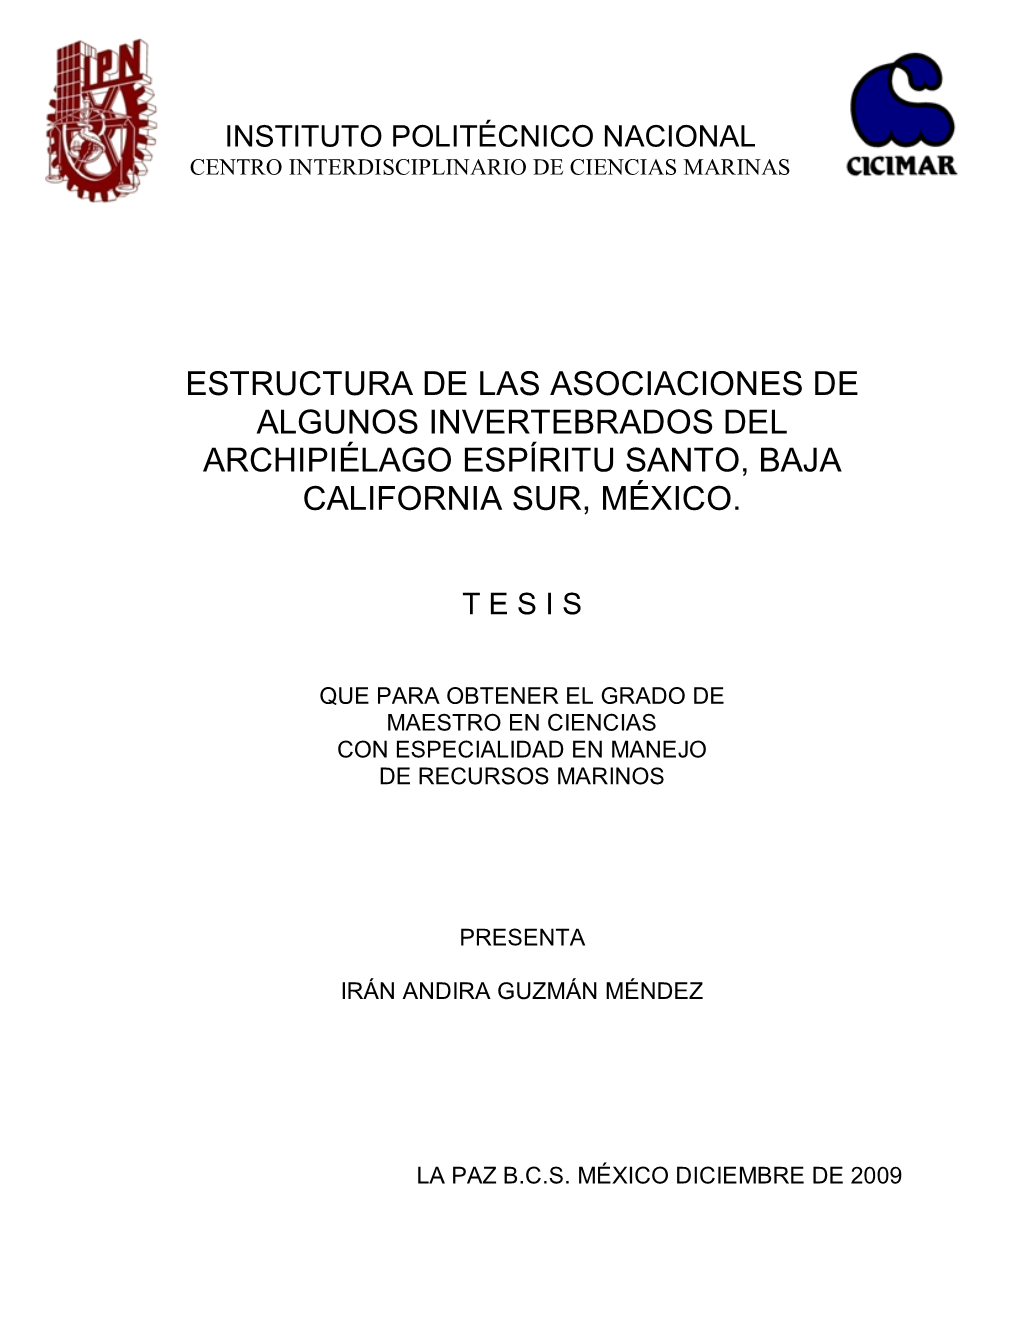 Estructura De Las Asociaciones De Algunos Invertebrados Del Archipiélago Espíritu Santo, Baja California Sur, México